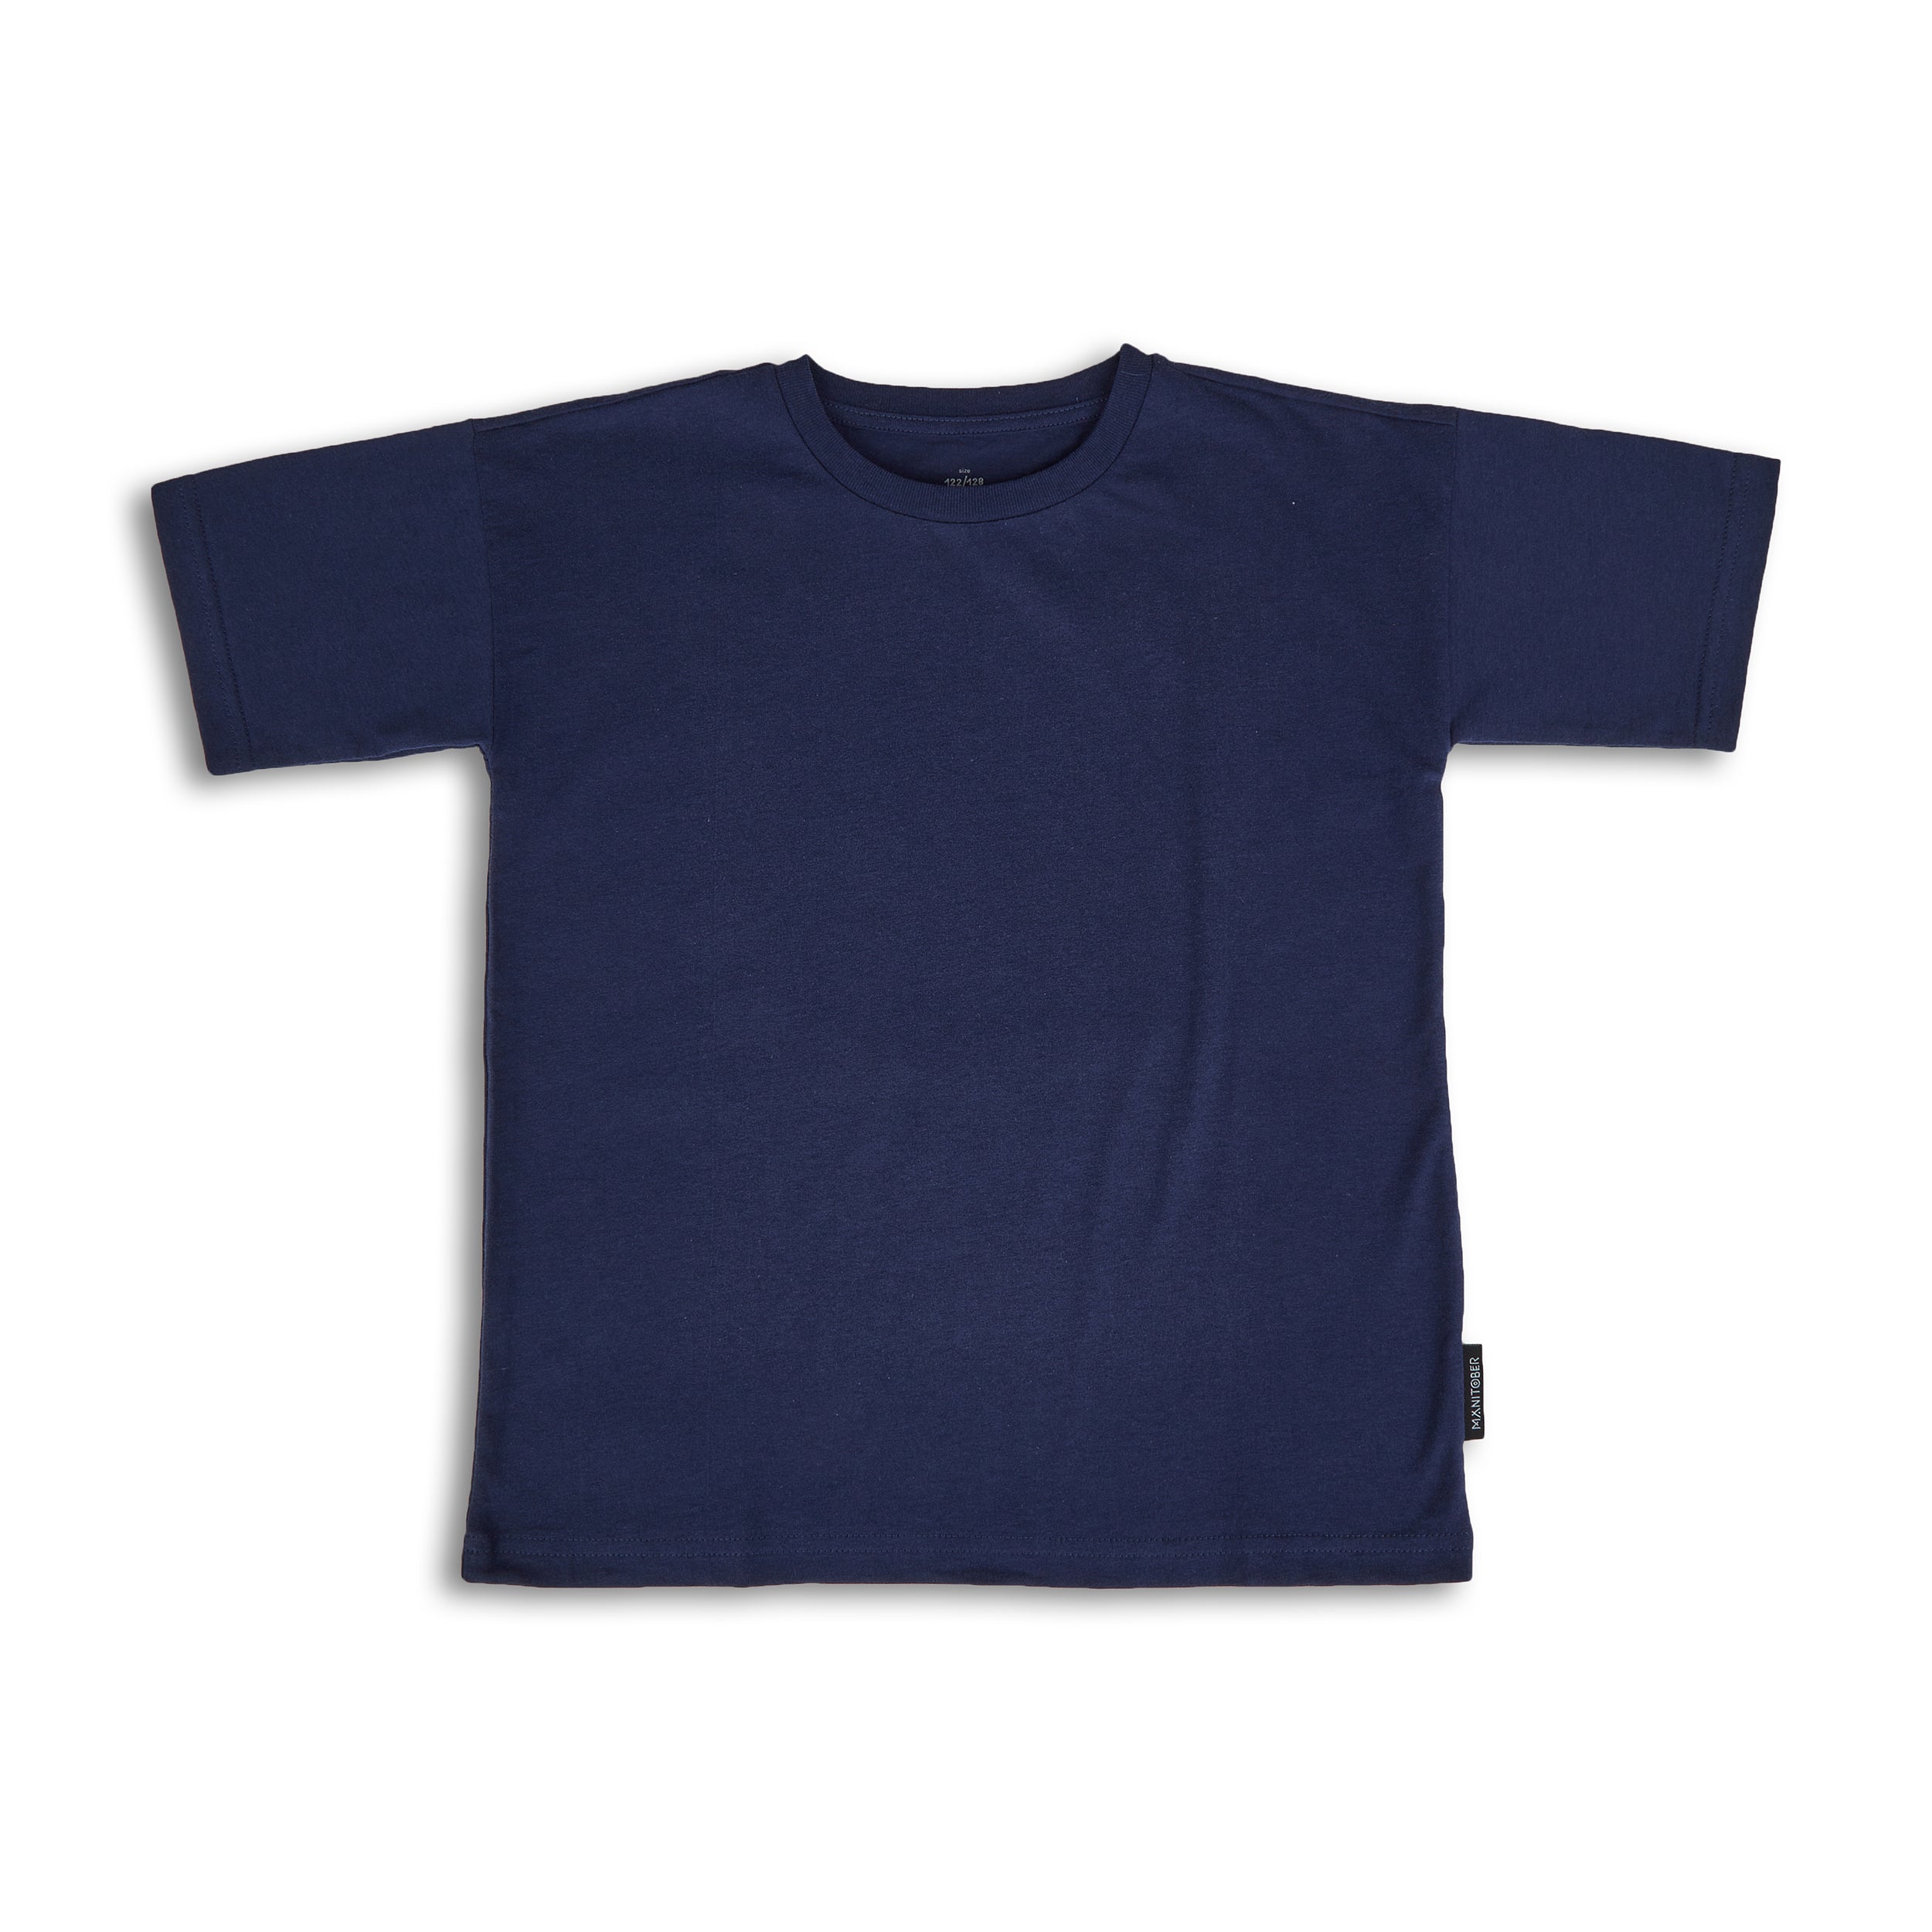 Single Oversize Kinder Refibra® und Bio-Baumwolle aus T-Shirt Jersey